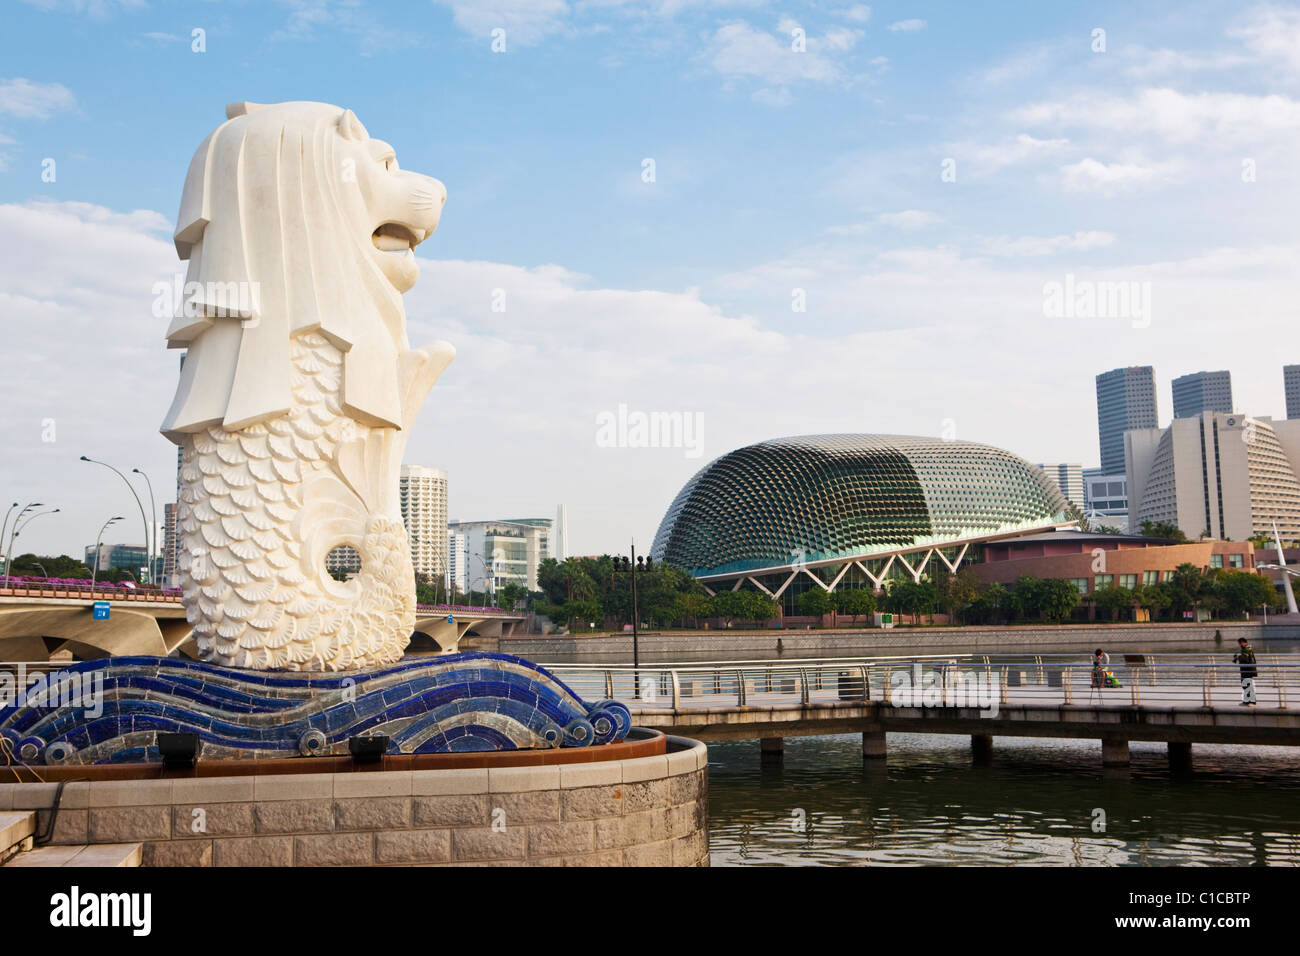 La statue du Merlion avec l'Esplanade - Theatres on the Bay bâtiment en arrière-plan, Marina Bay, Singapour Banque D'Images